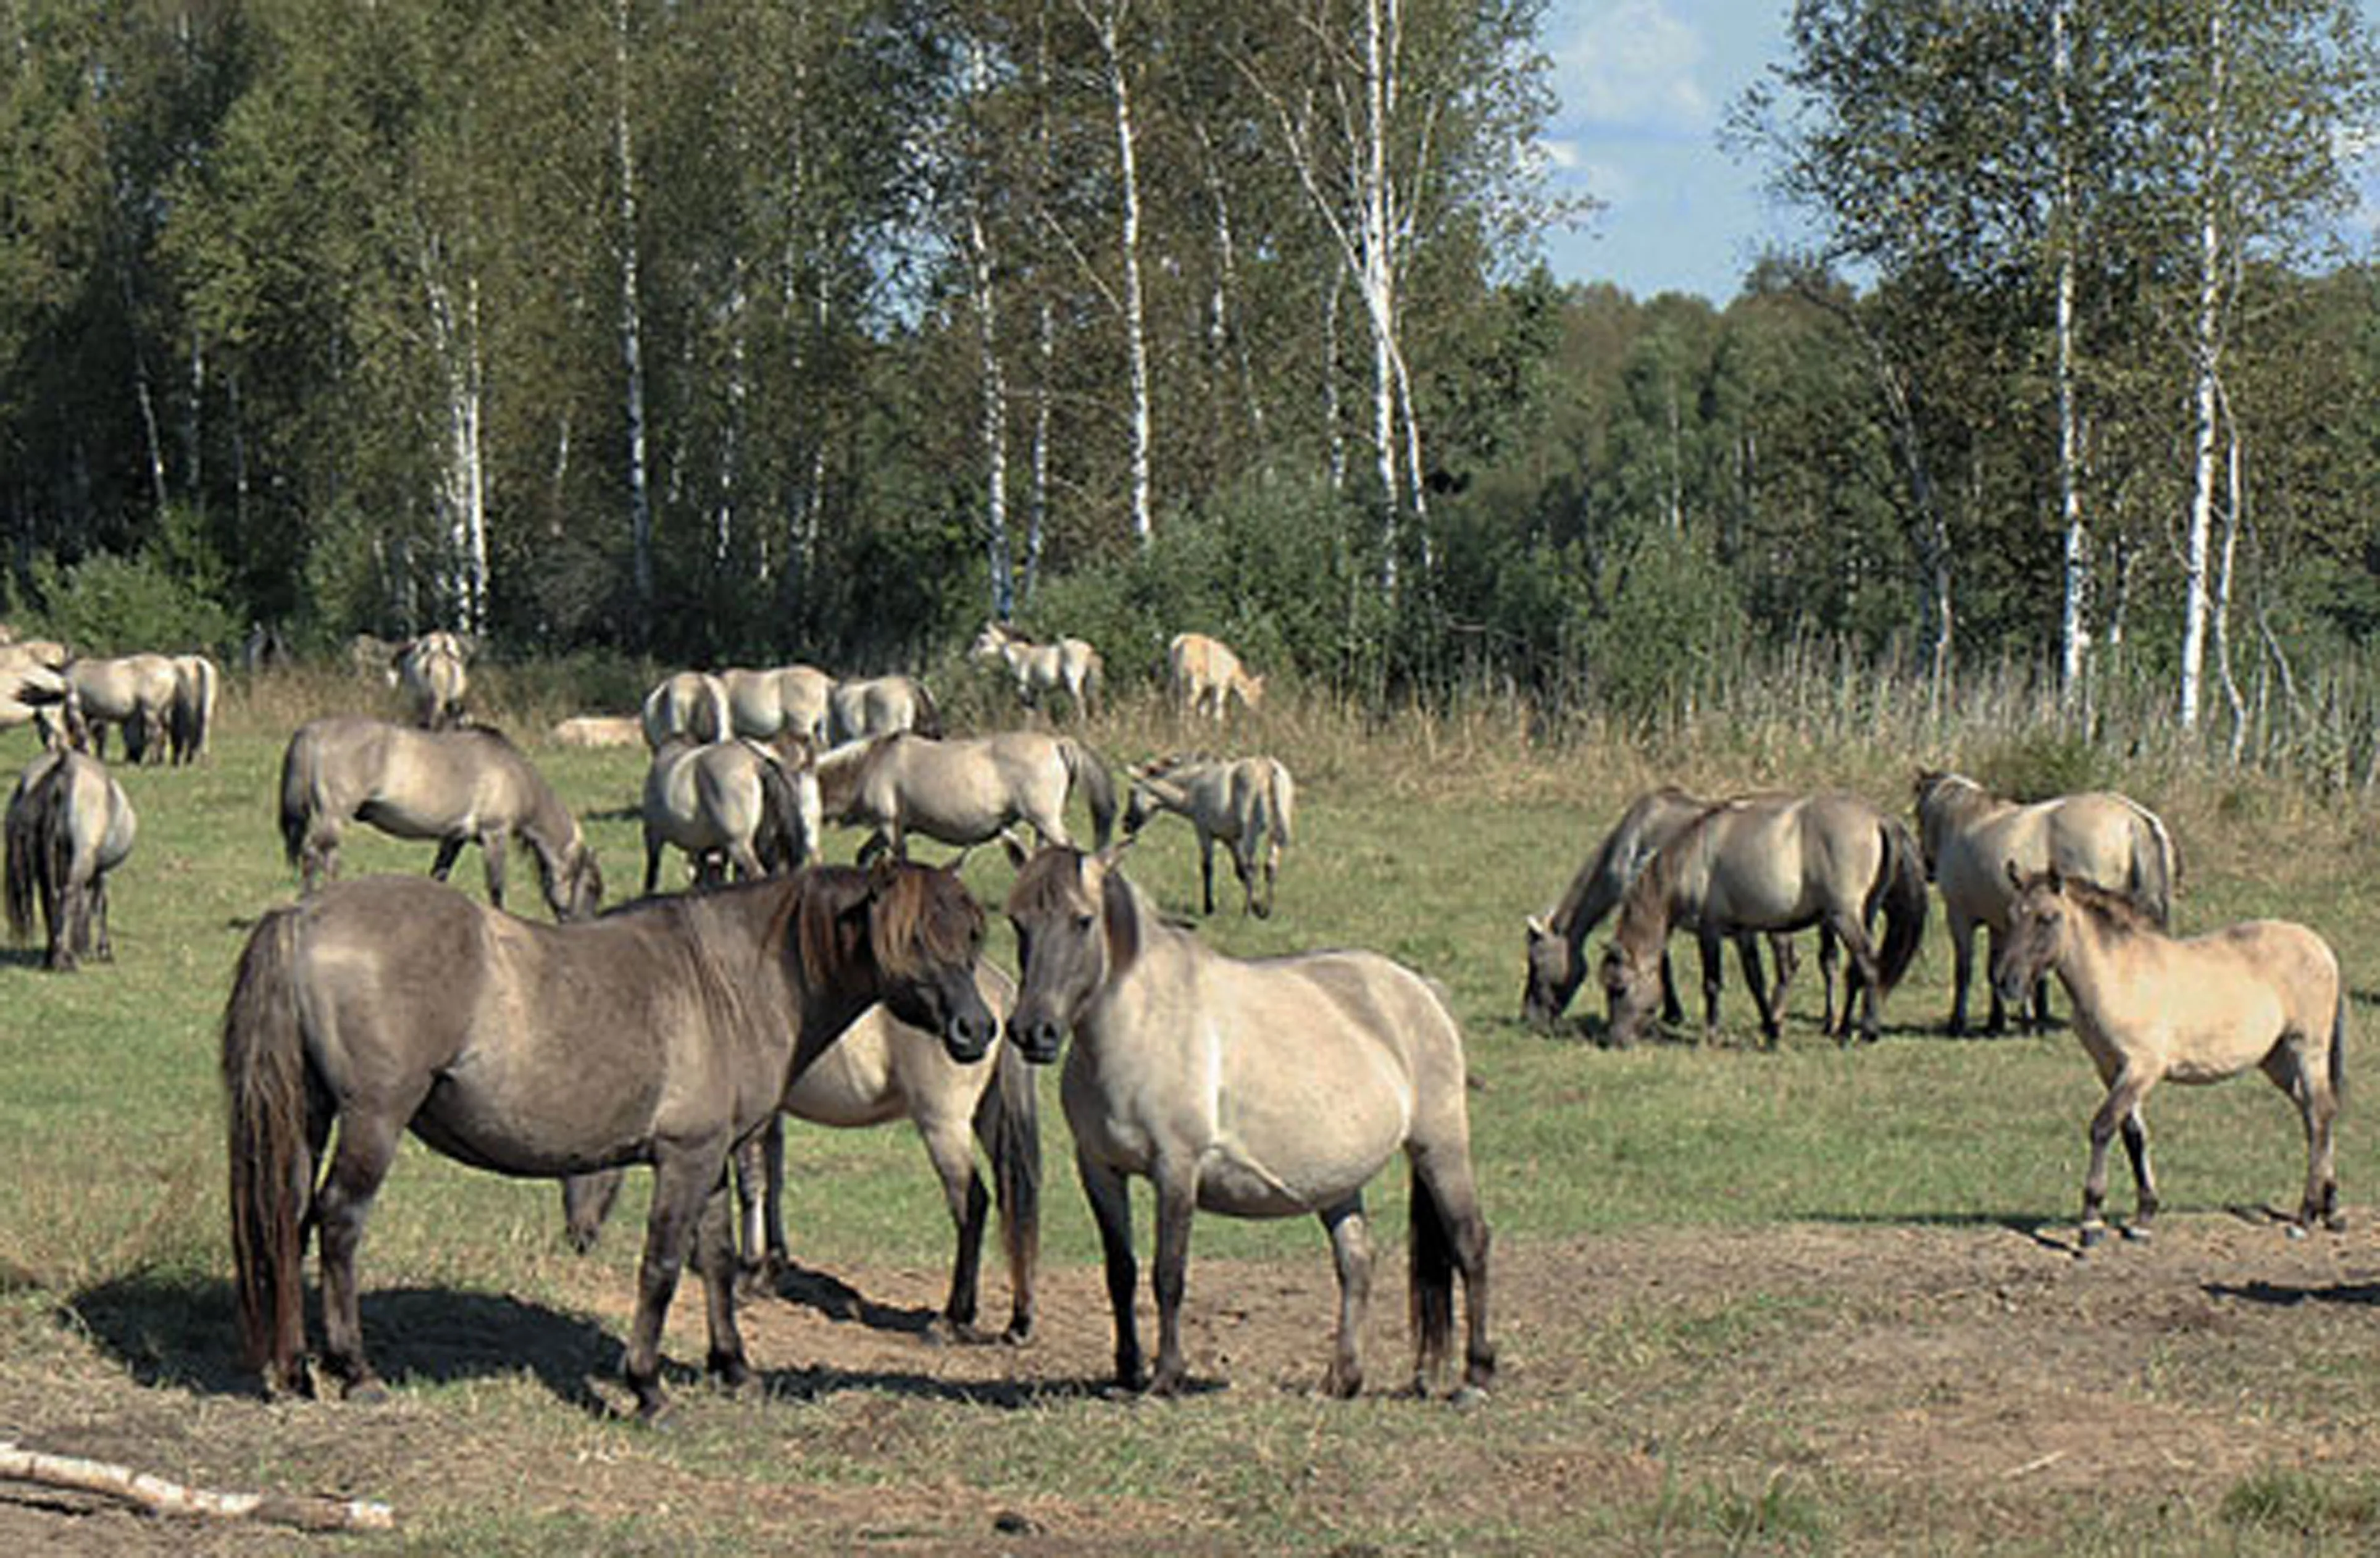 Одна из фишек заказника "Налибокский" - тарпановидные лошадки породы коник. Туристы от них в восторге!